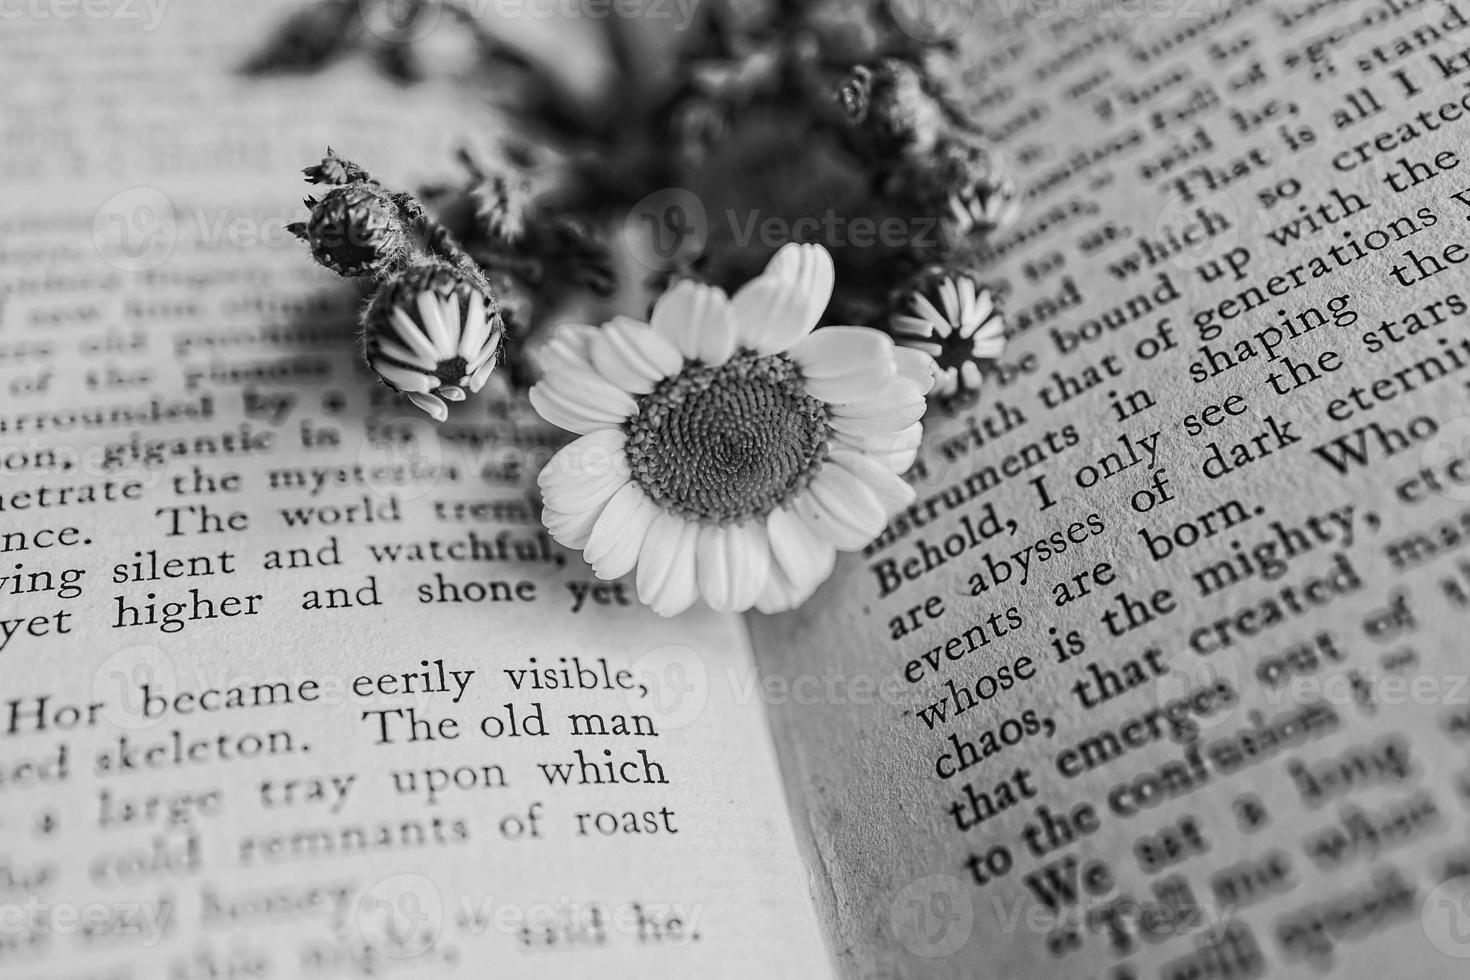 de cerca hermosa pequeño primavera flor margarita manzanilla en el antecedentes de el antiguo libro foto